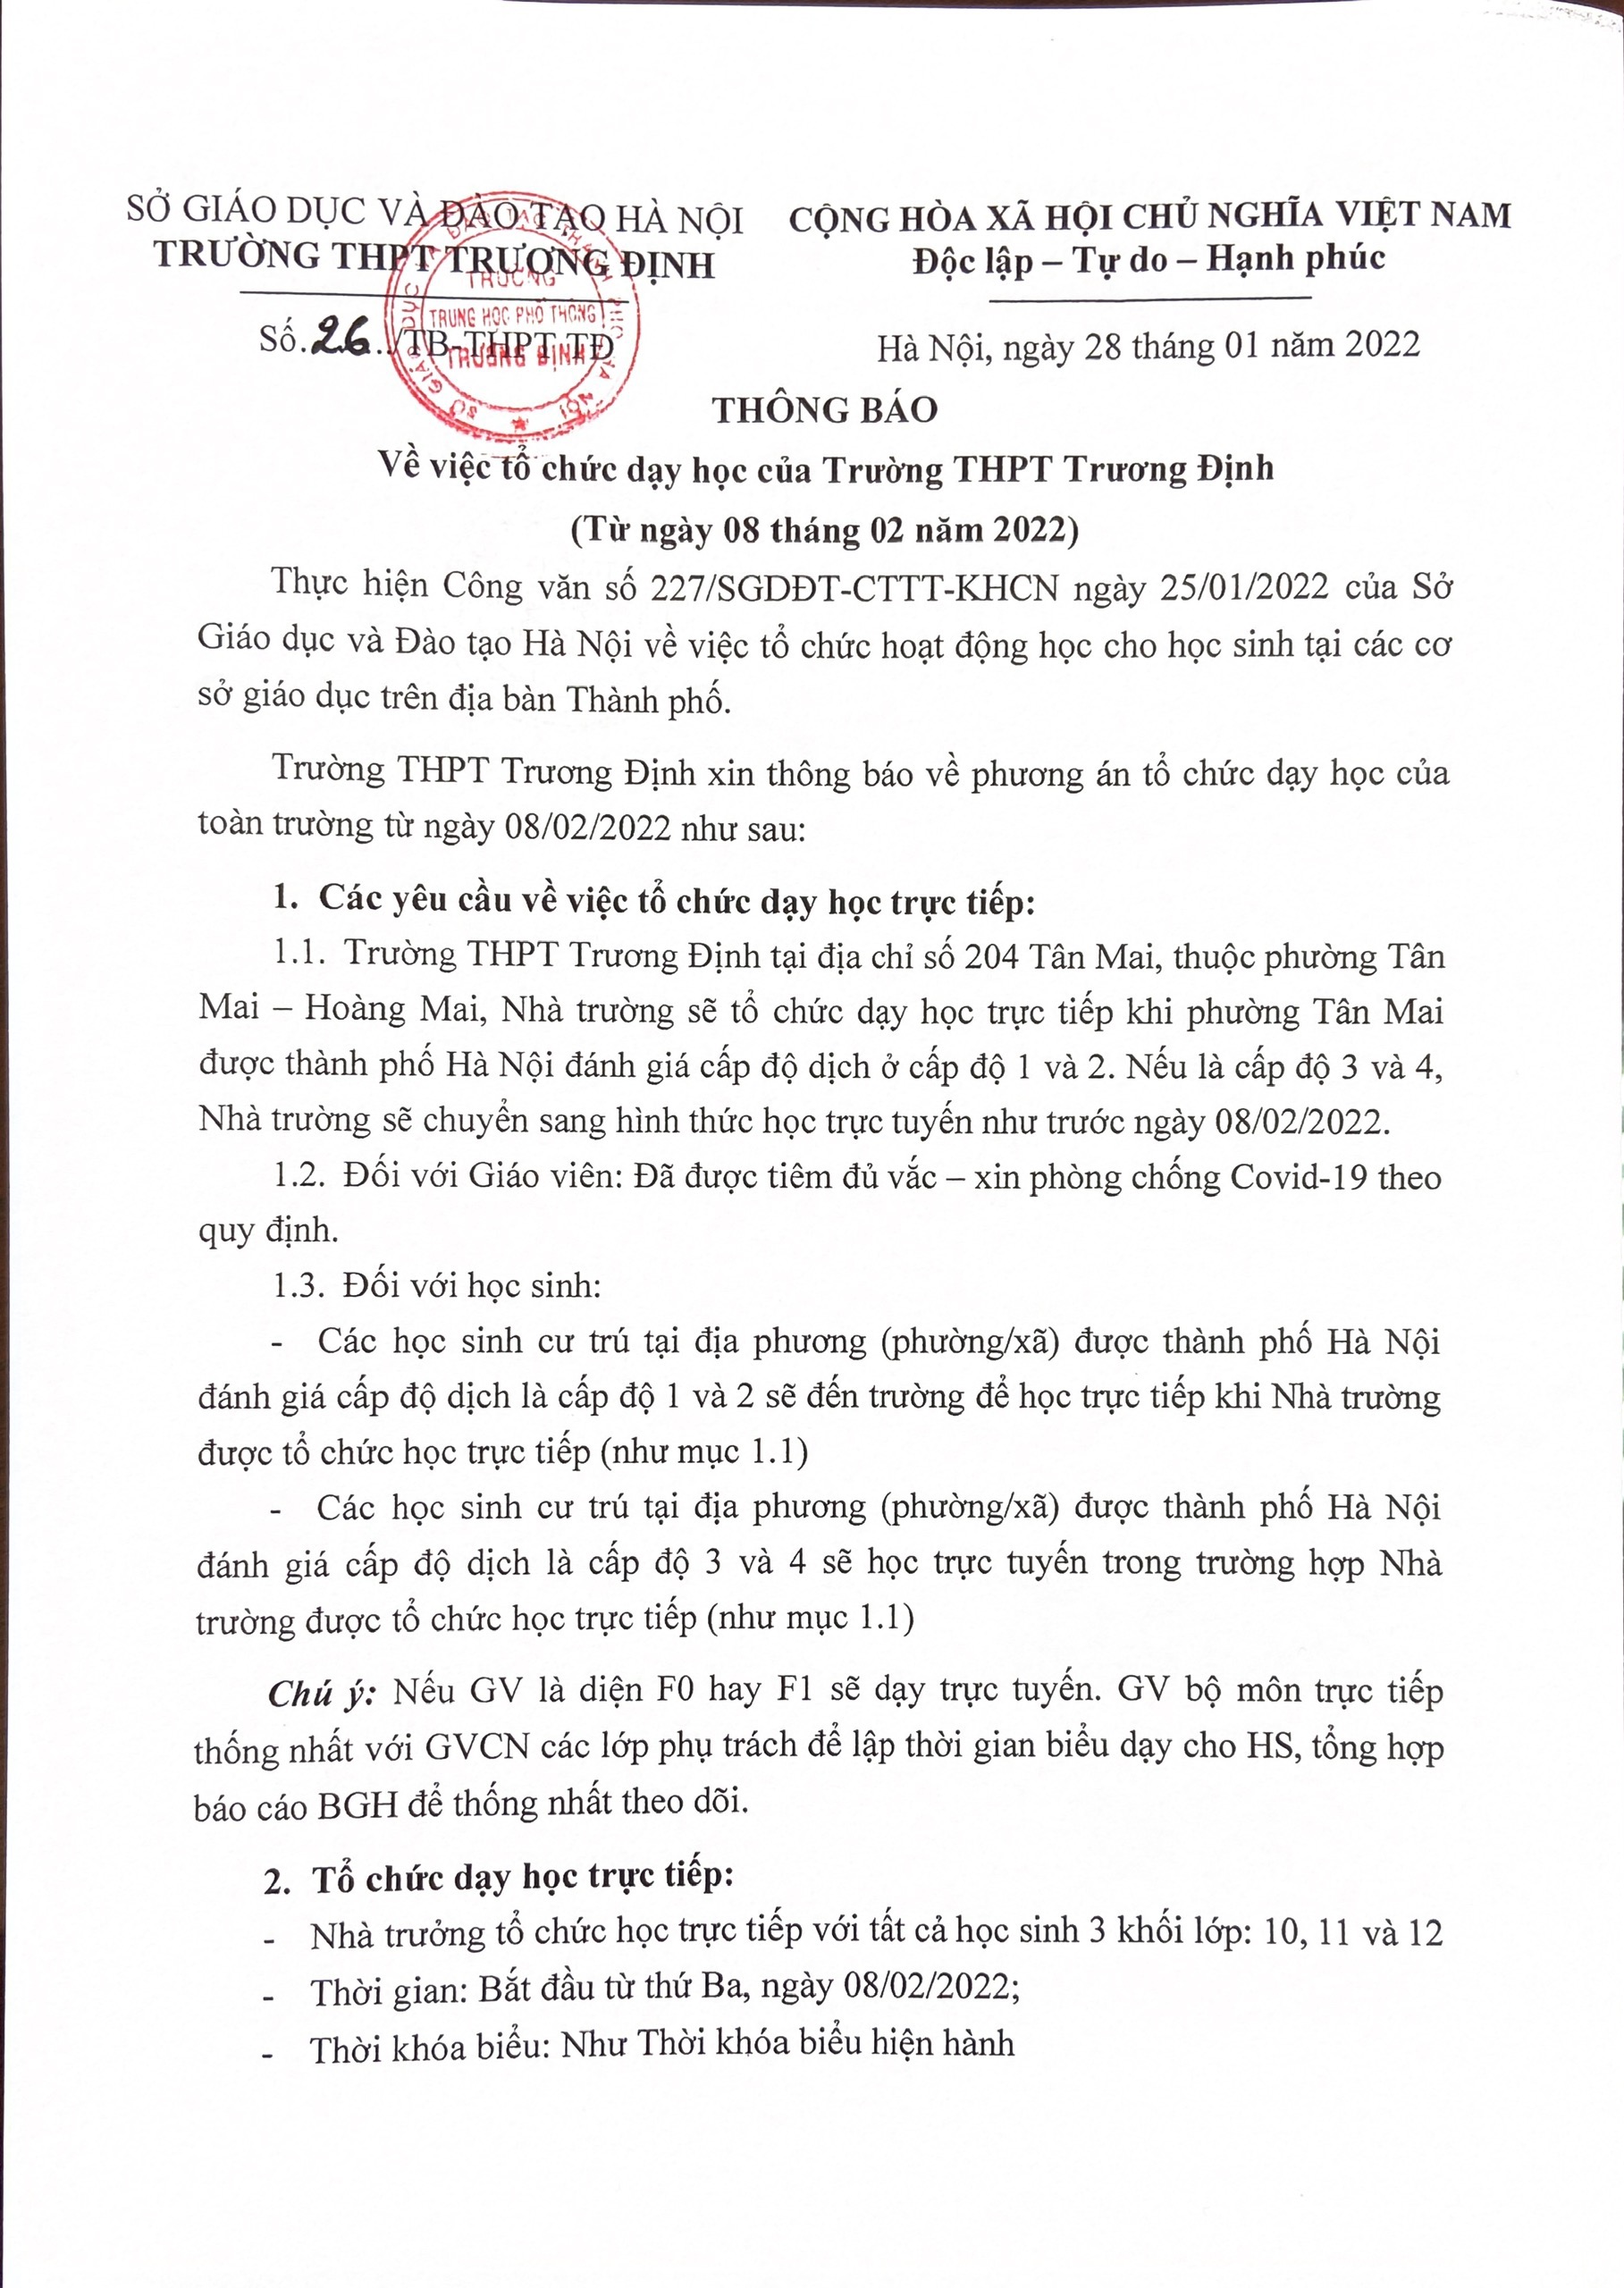 Thông báo về việc tổ chức dạy học của trường THPT Trương Định (Từ ngày 8/2/2022)